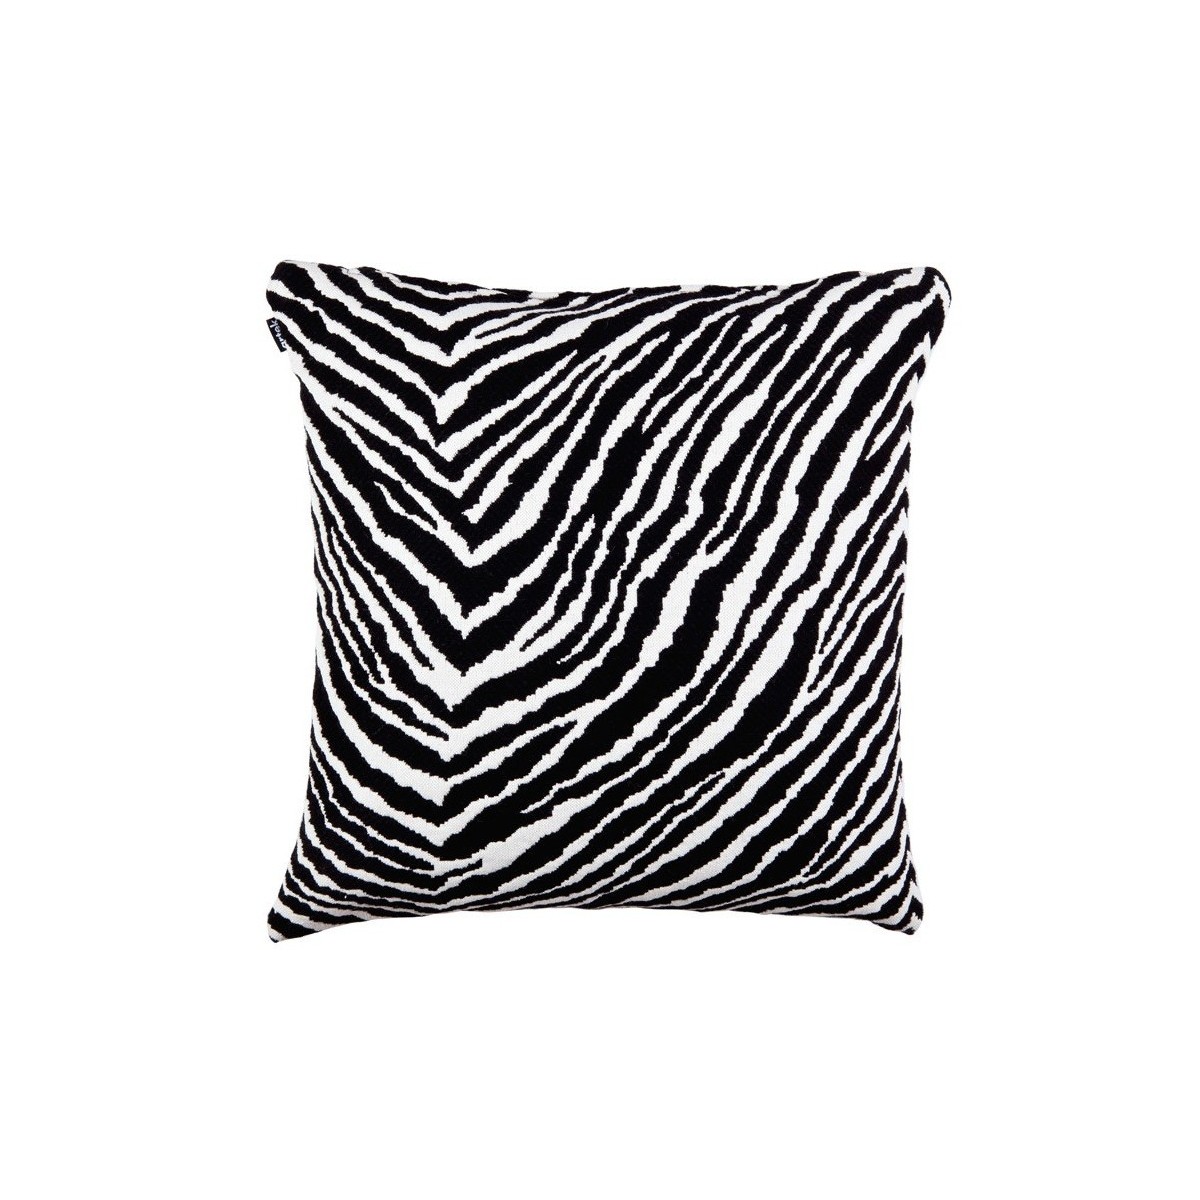 50x50cm - Wool - Zebra Cushion Cover